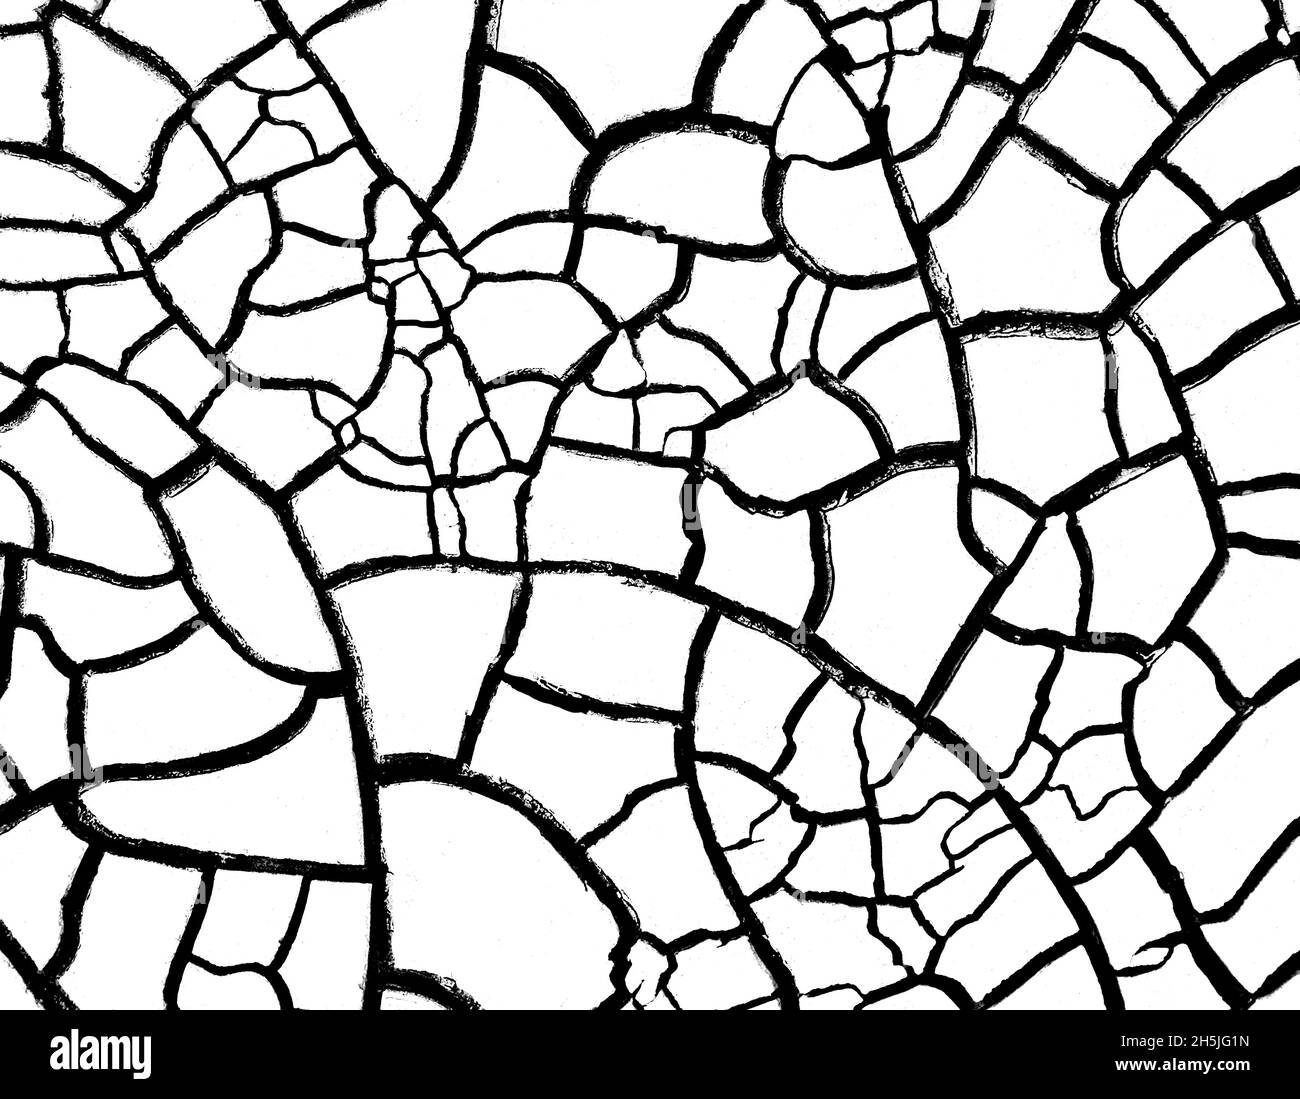 Getrockneter rissiger Boden, schwarz-weiße Texturüberlagerung Stockfoto